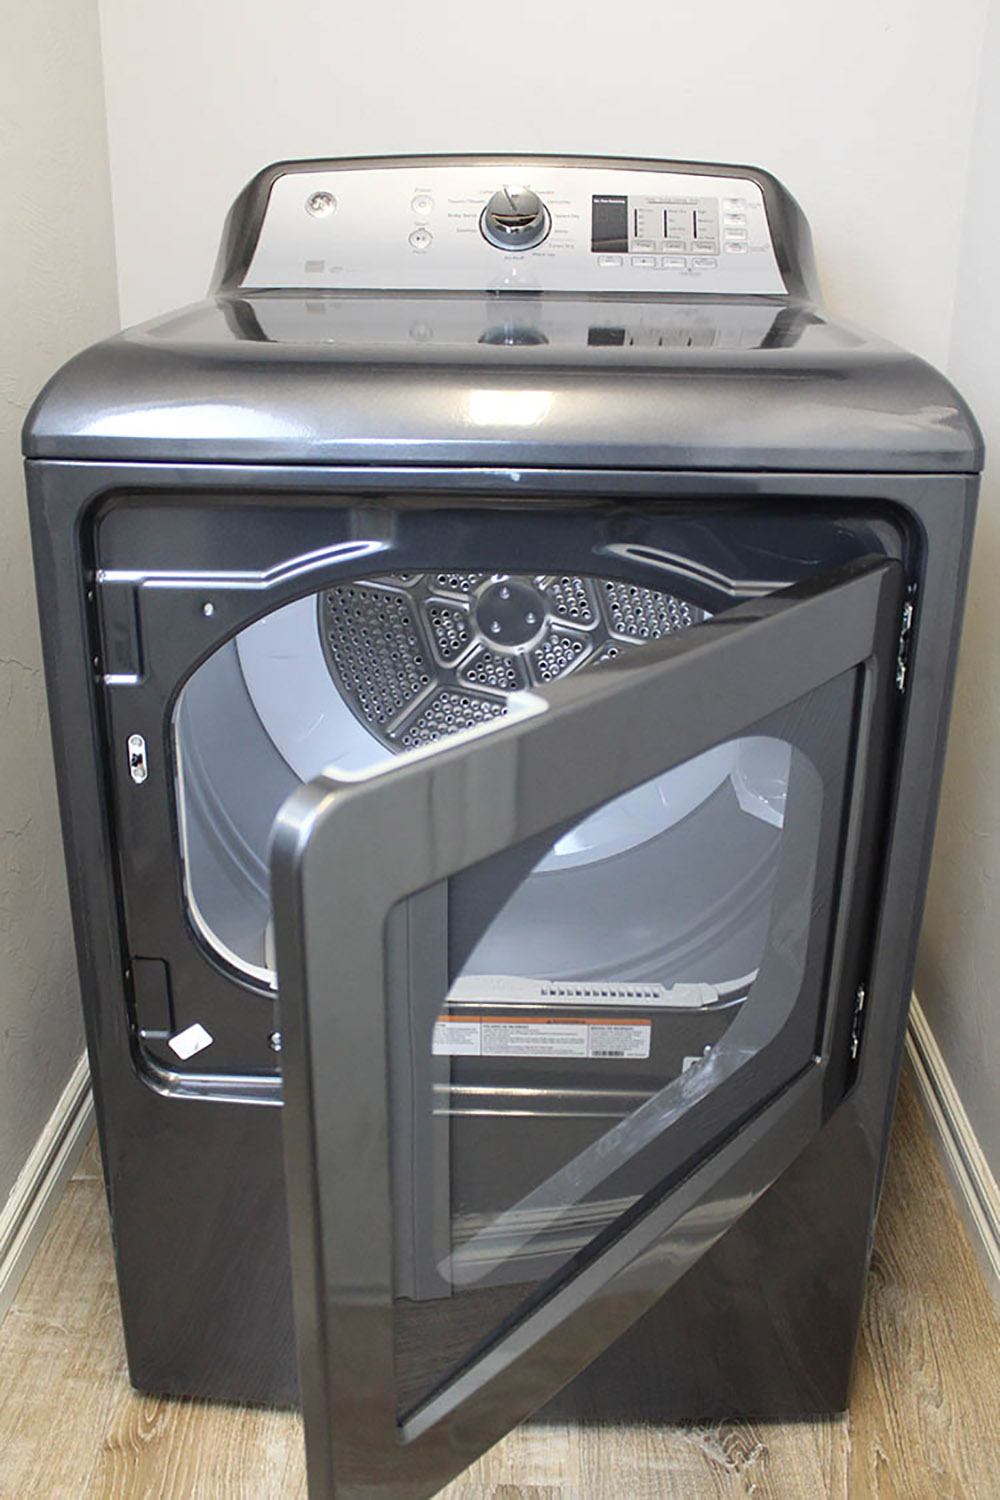 A new gray GE dryer with the door open.